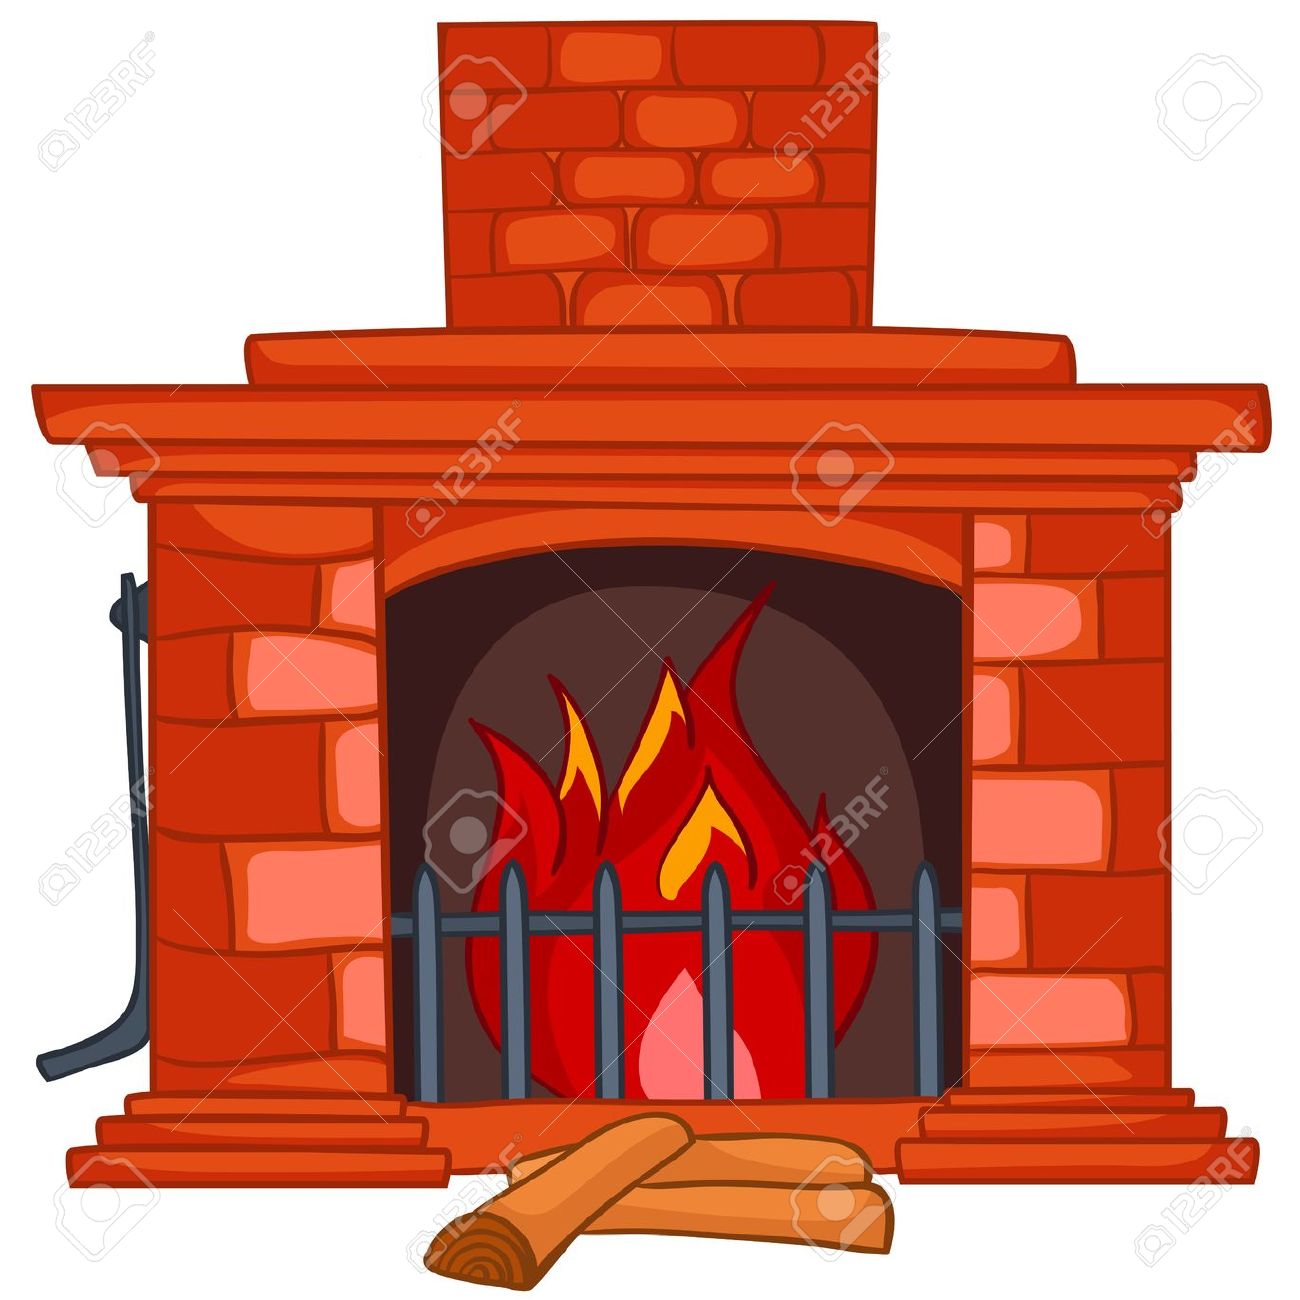 Clipart Fireplace - clipartal - Fireplace Clipart